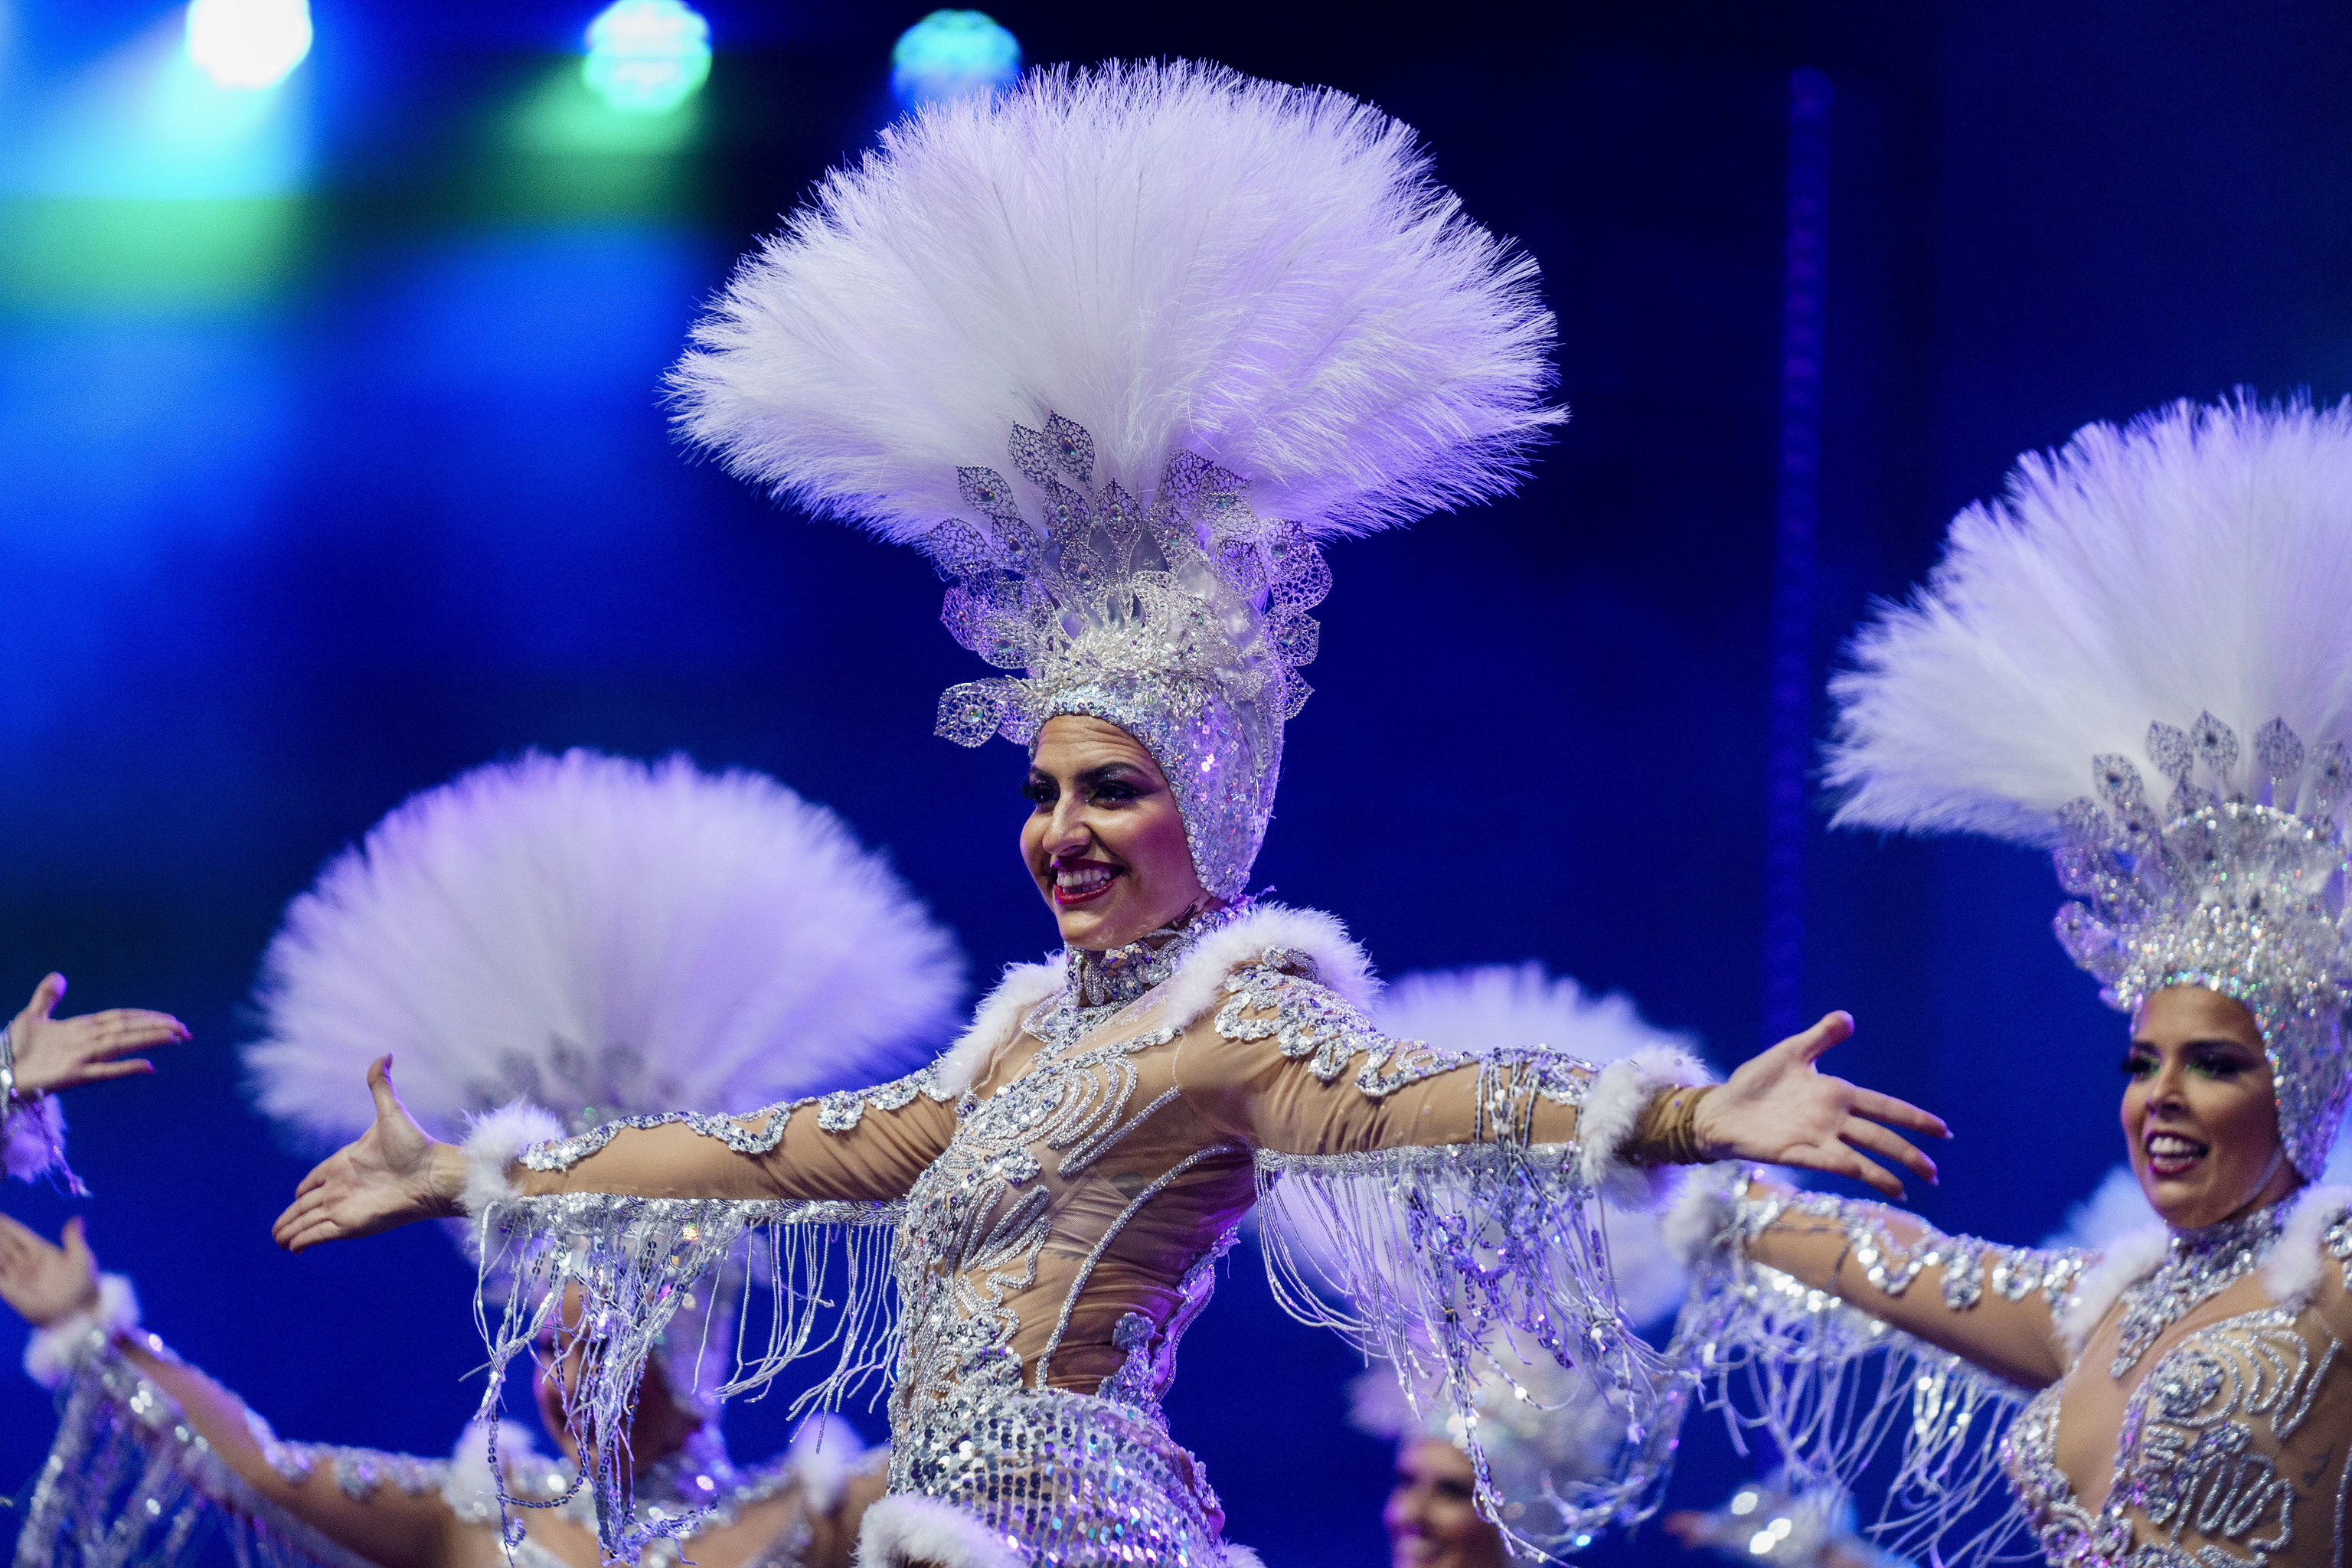 La comparsas Los Cariocas durante su actuacin en el concurso de comparsas del Carnaval de Santa Cruz de Tenerife.